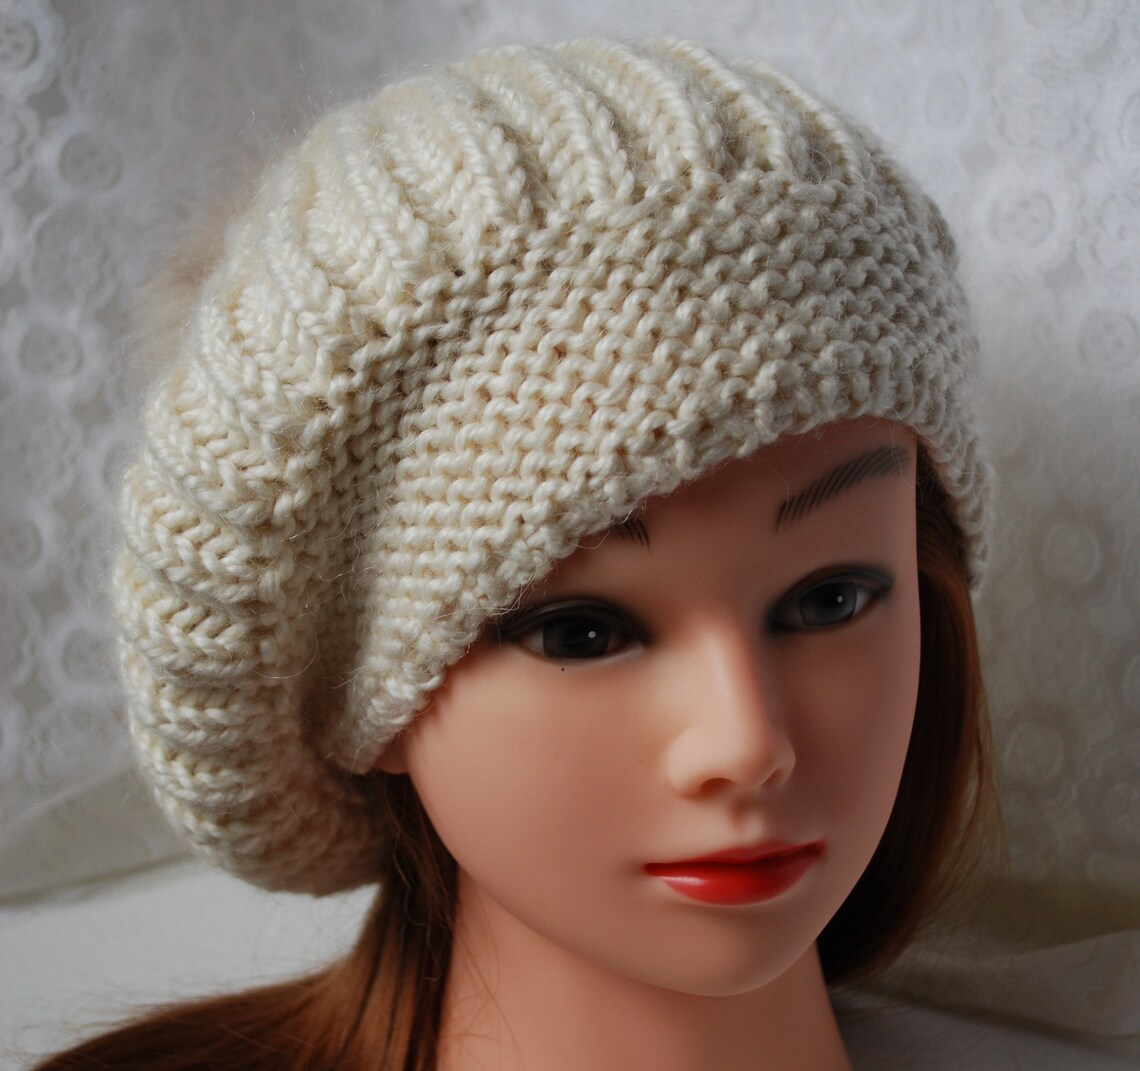 Ivory Knit Warm Beanie Hat, Knit Warm Pom Pom Beanie, Winter Pom Pom ...